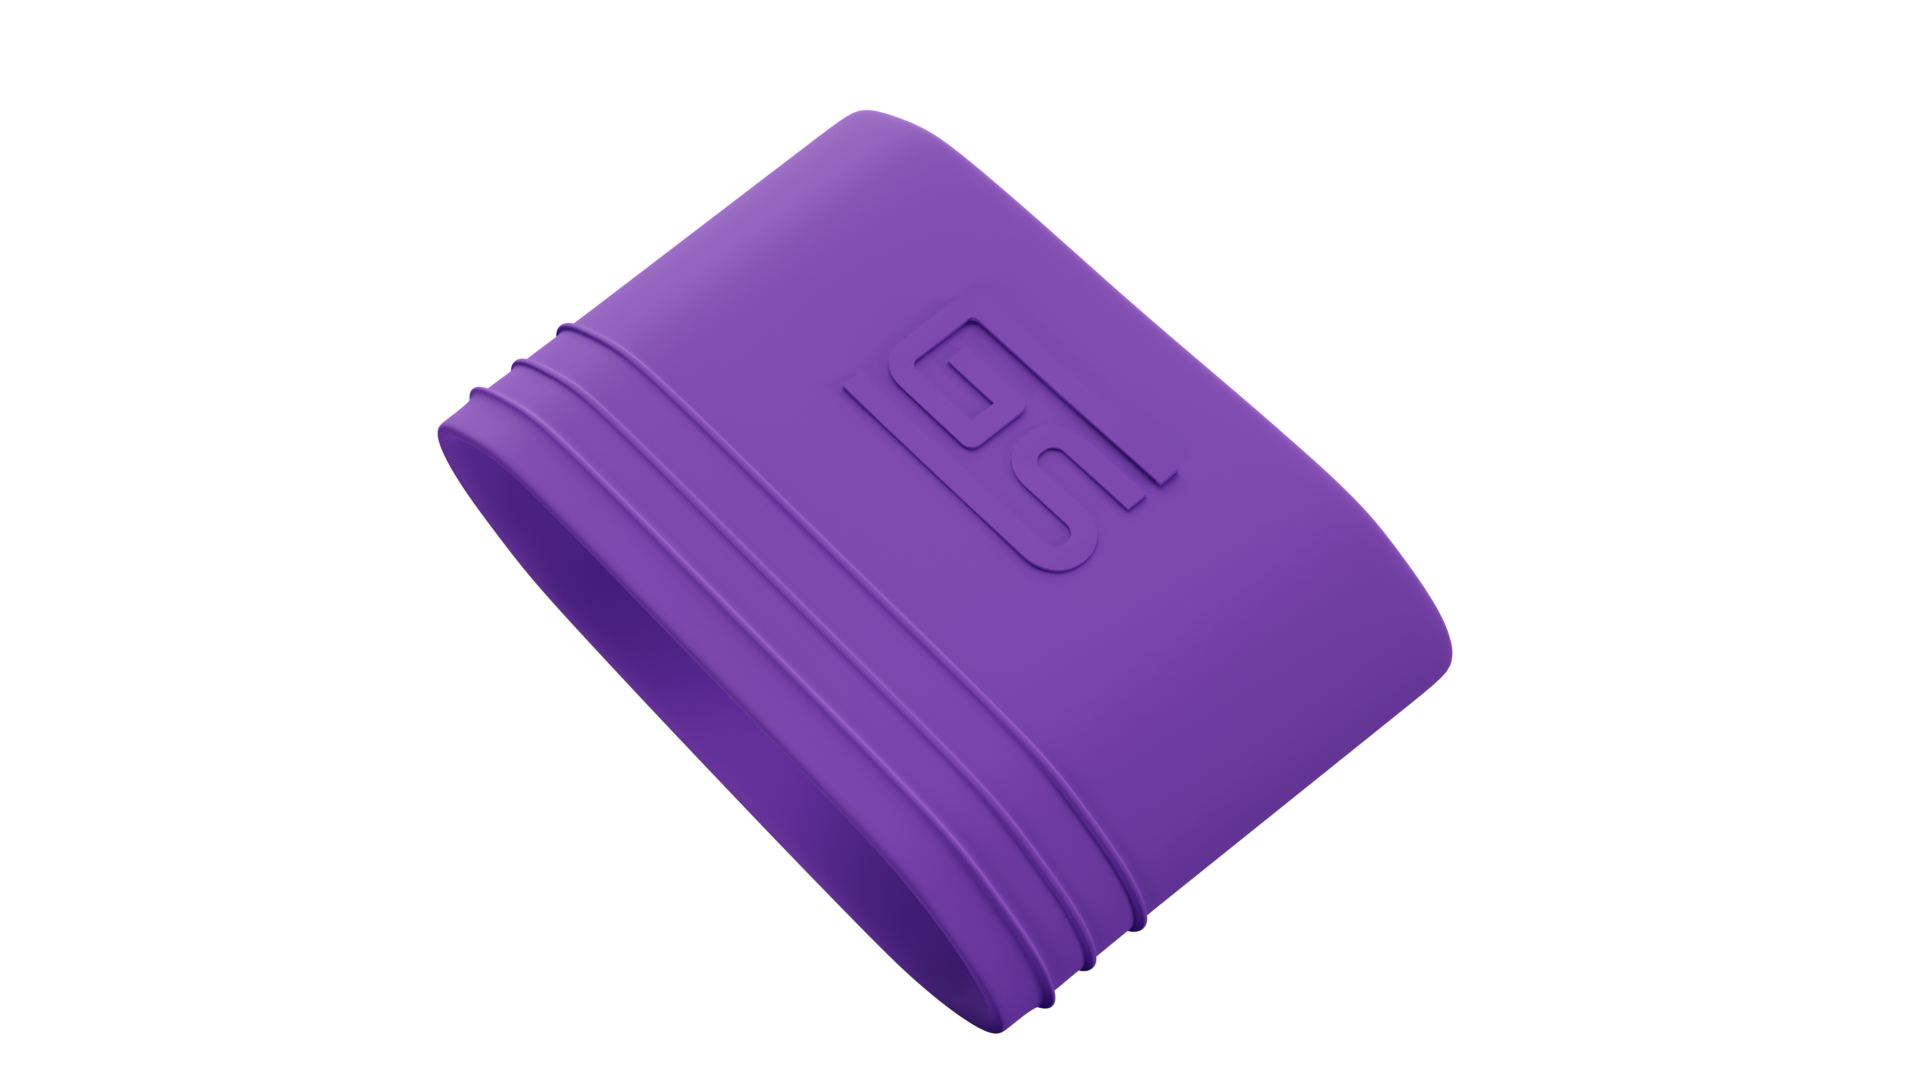 Gstrap's (purple) 